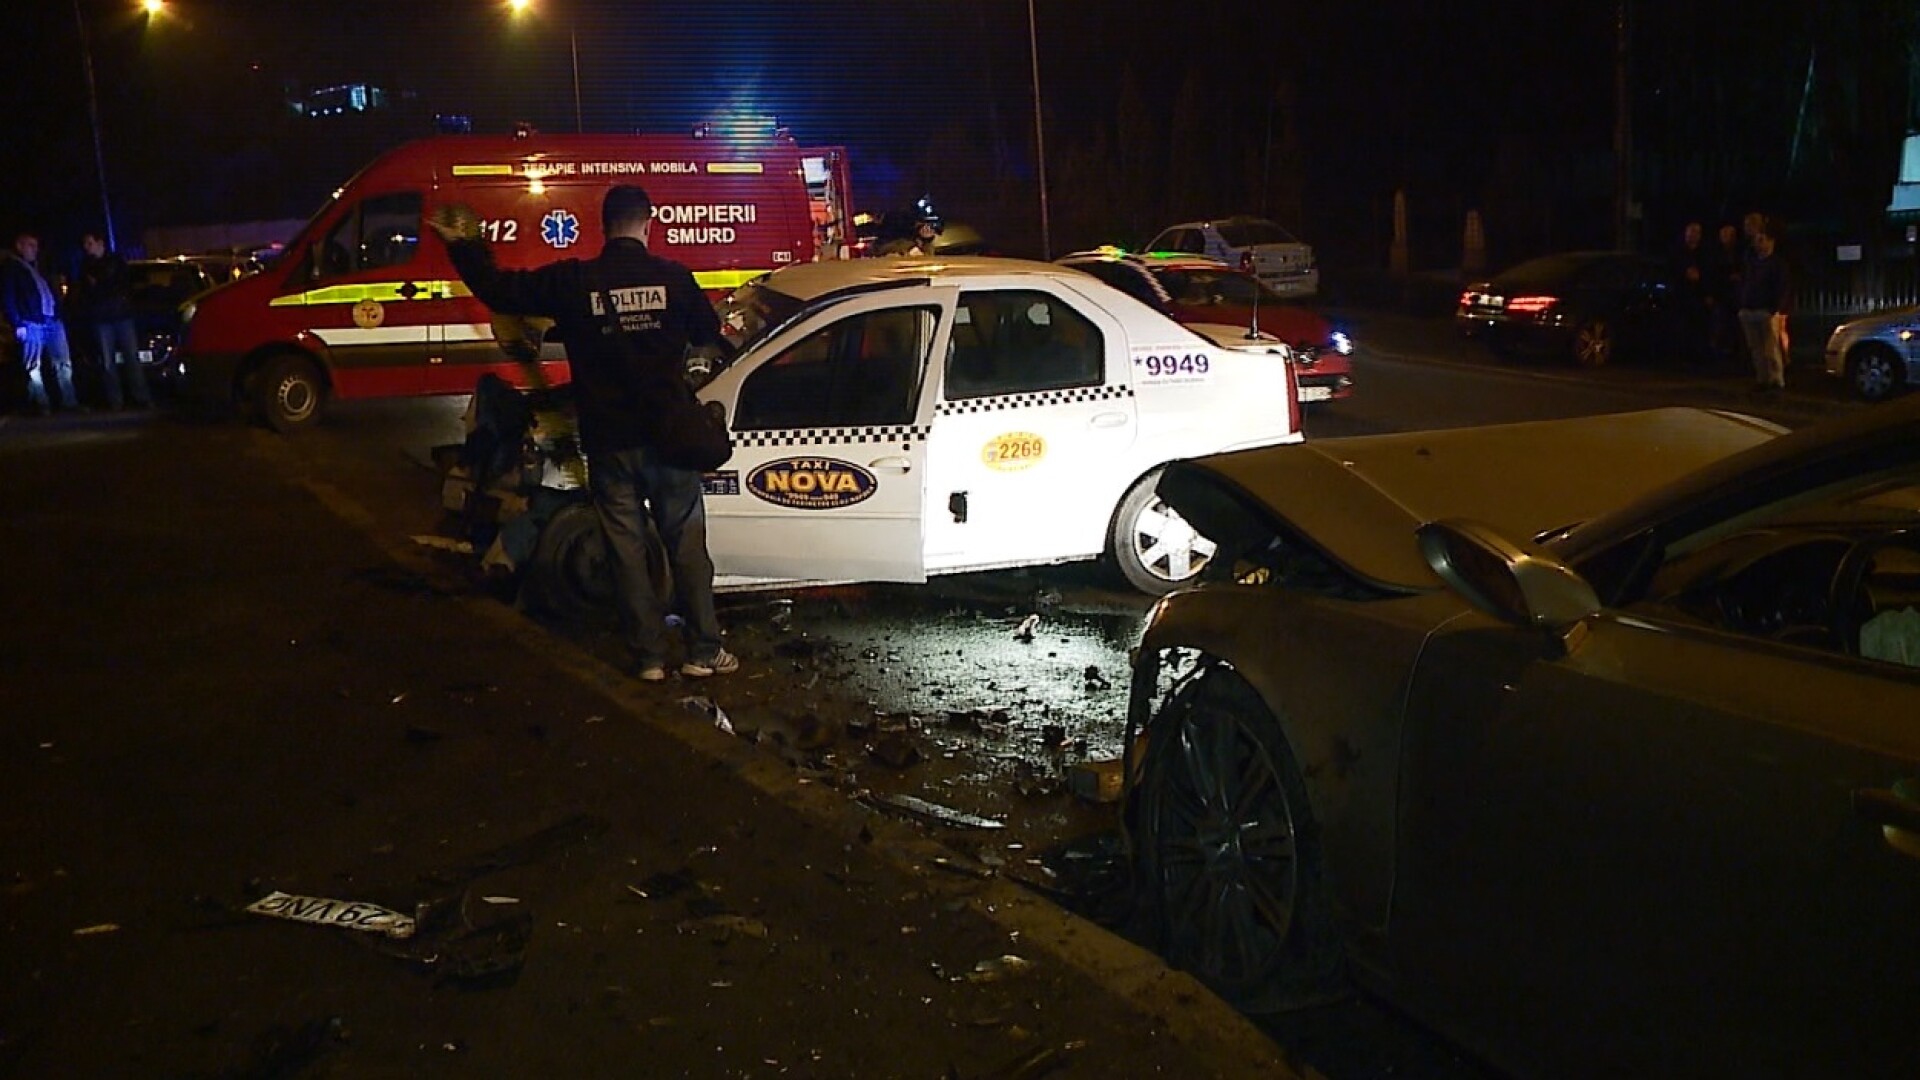 Interlopul din Cluj care a fugit de la locul accidentului, s-a predat